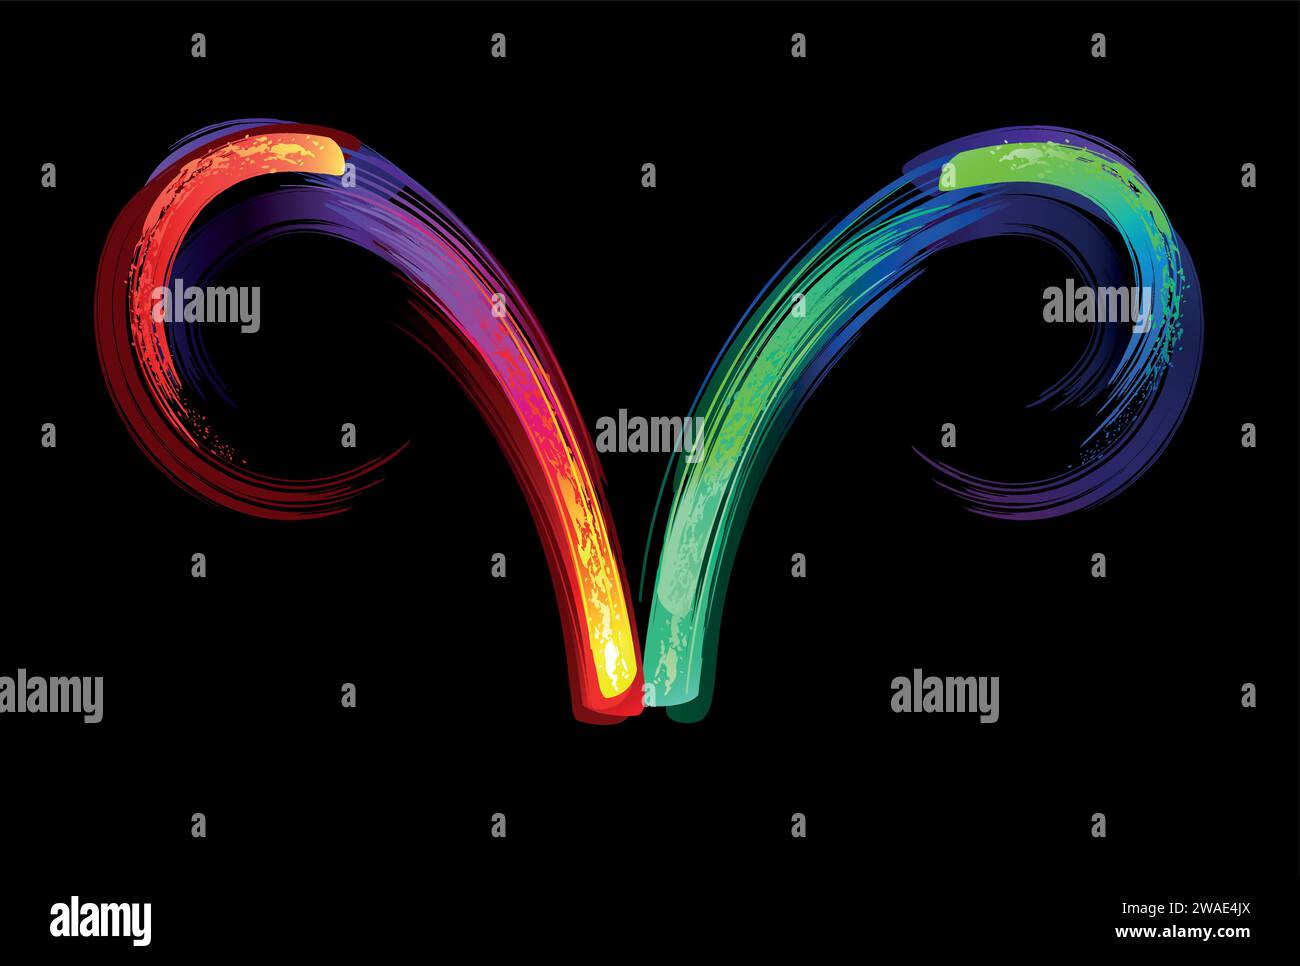 Segno zodiacale ariete, dipinto con grandi tratti di arcobaleno, luminoso, multicolore, luminescente, vernice al neon su sfondo nero. Simbolo Zodiaco. Illustrazione Vettoriale